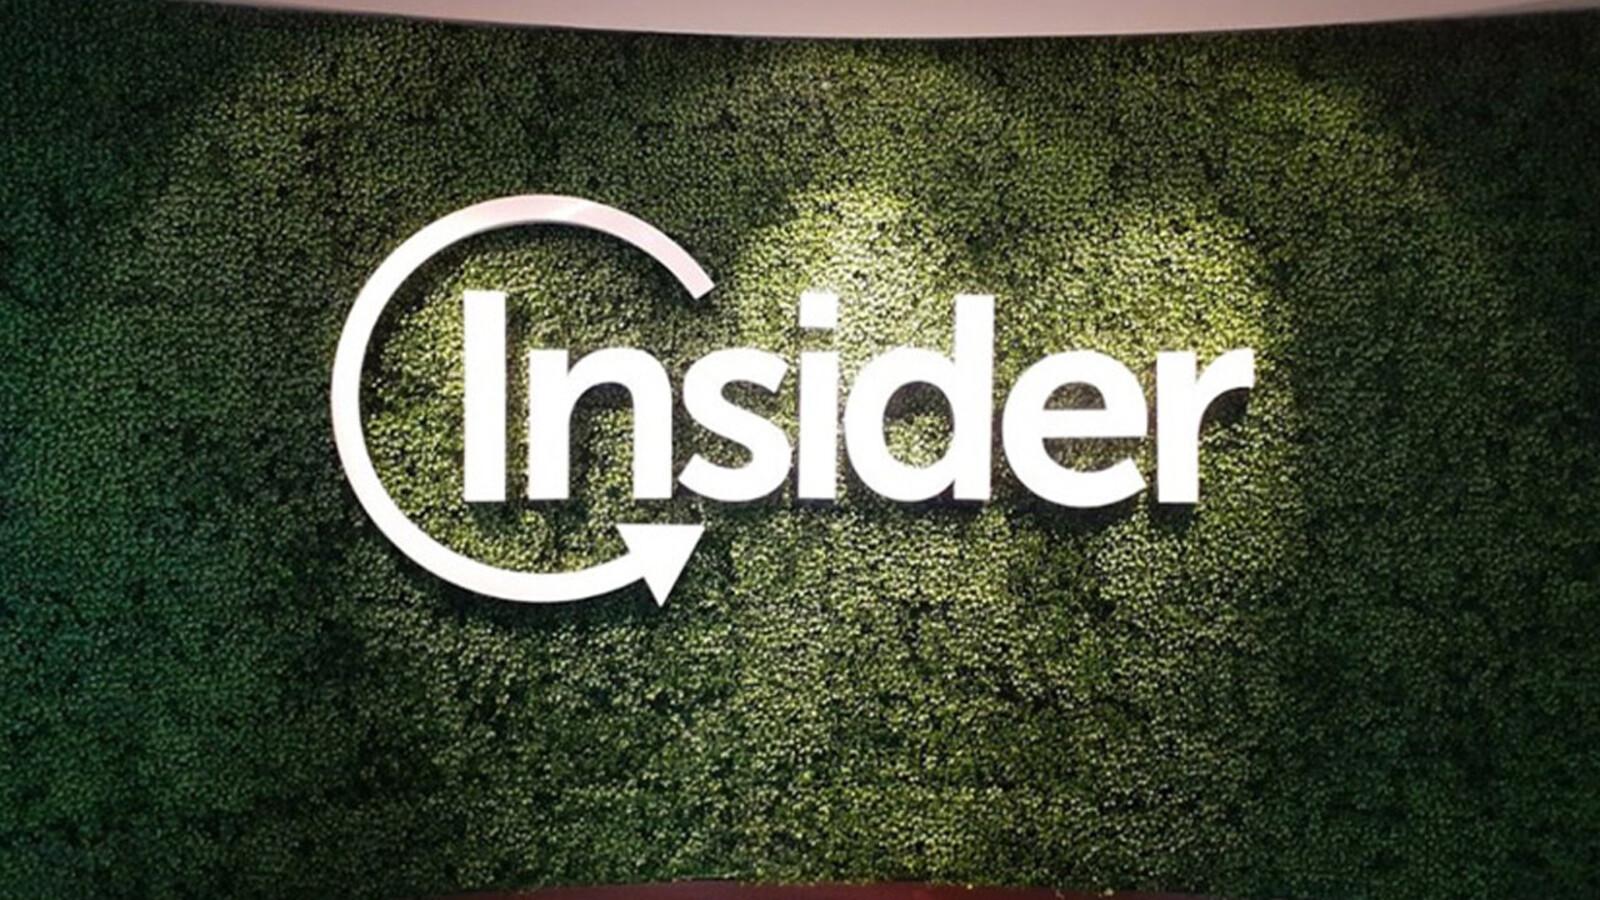 Türk yazılım şirketi Insider, 105 milyon dolar yatırım aldı